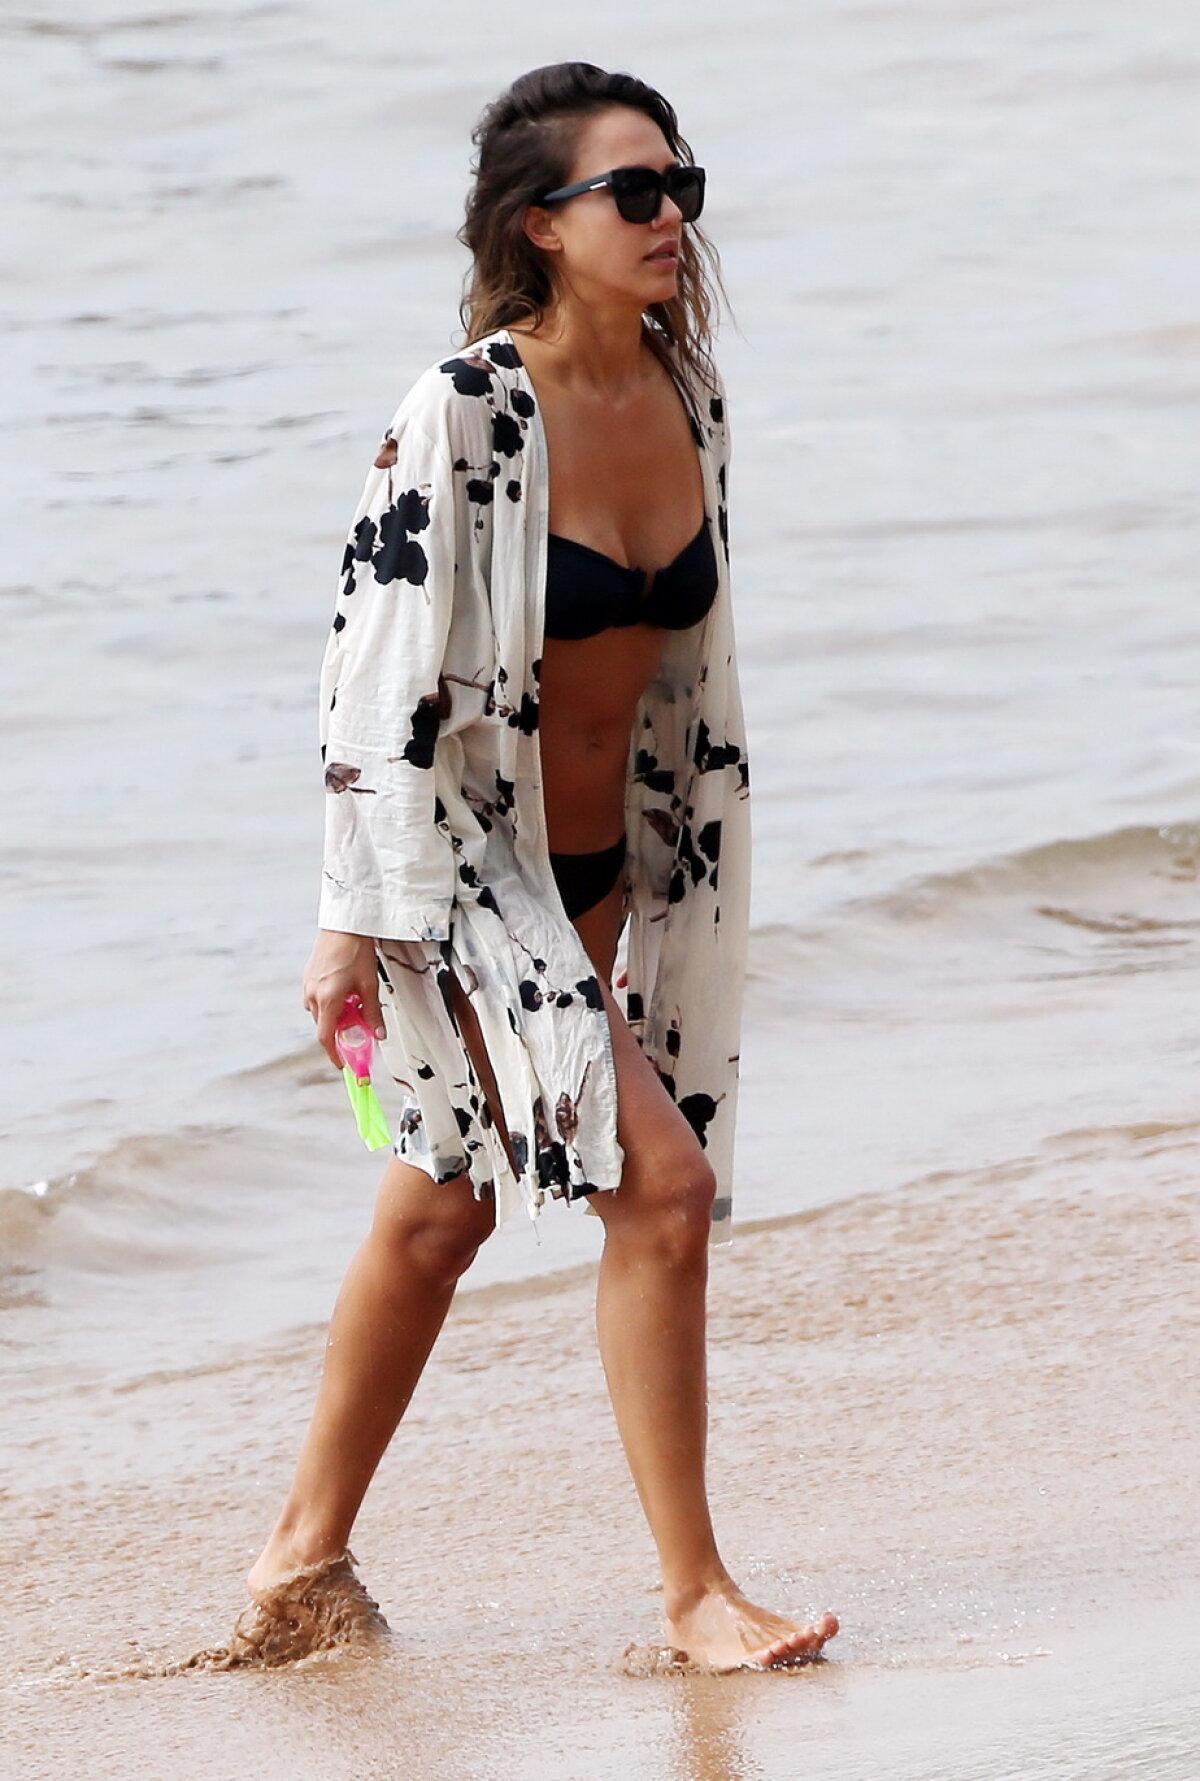 GALERIE FOTO » Jessica Alba, naturală 100% la plajă! Imaginile sunt superbe